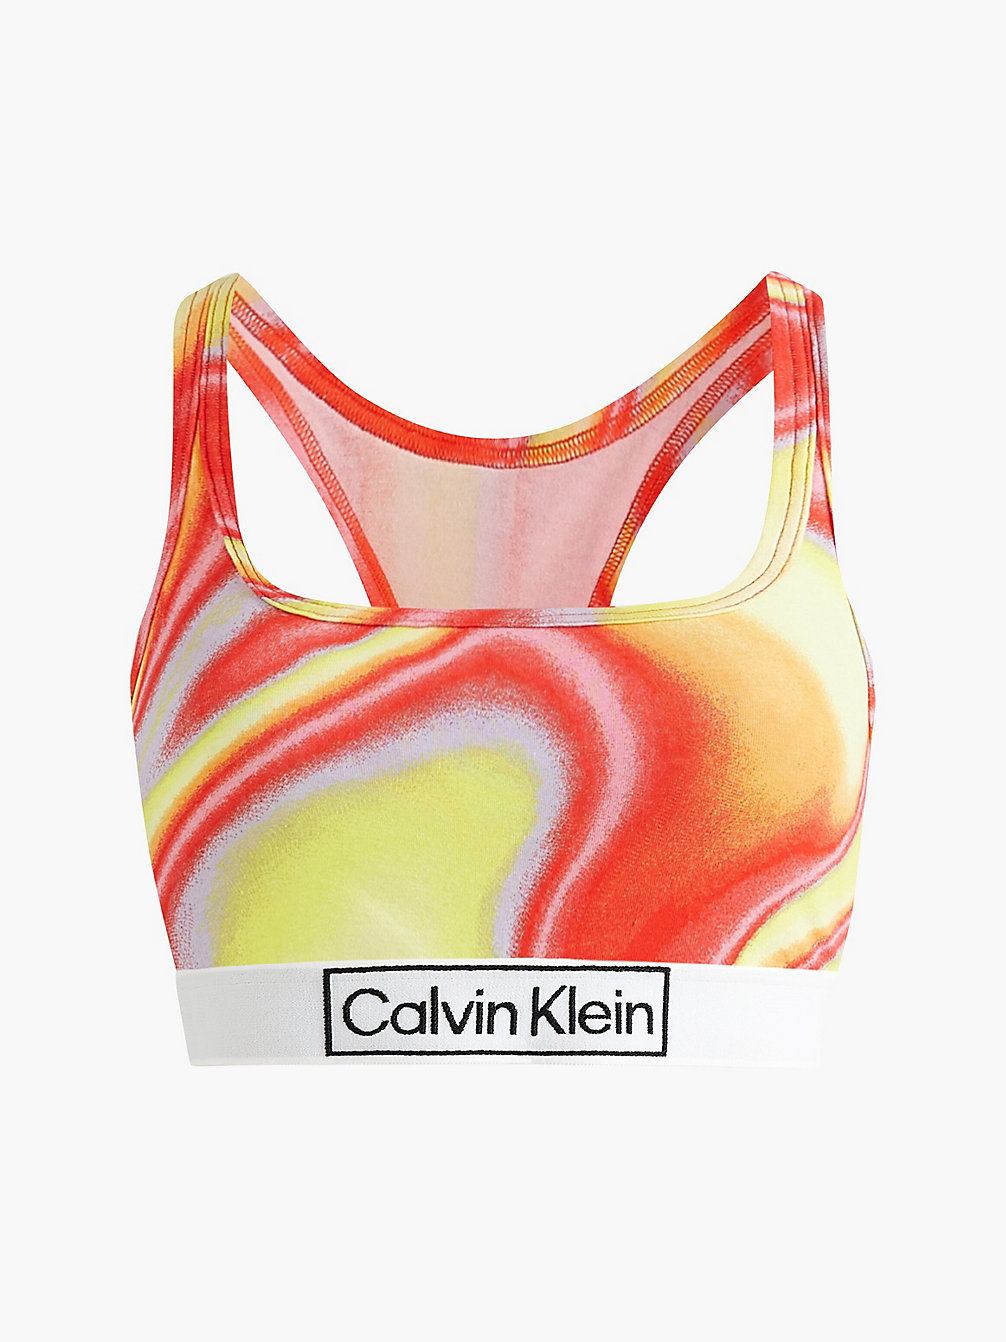 IRIDESCENT PRINT_TUSCAN TERRA COTTA Brassière - Pride undefined femmes Calvin Klein